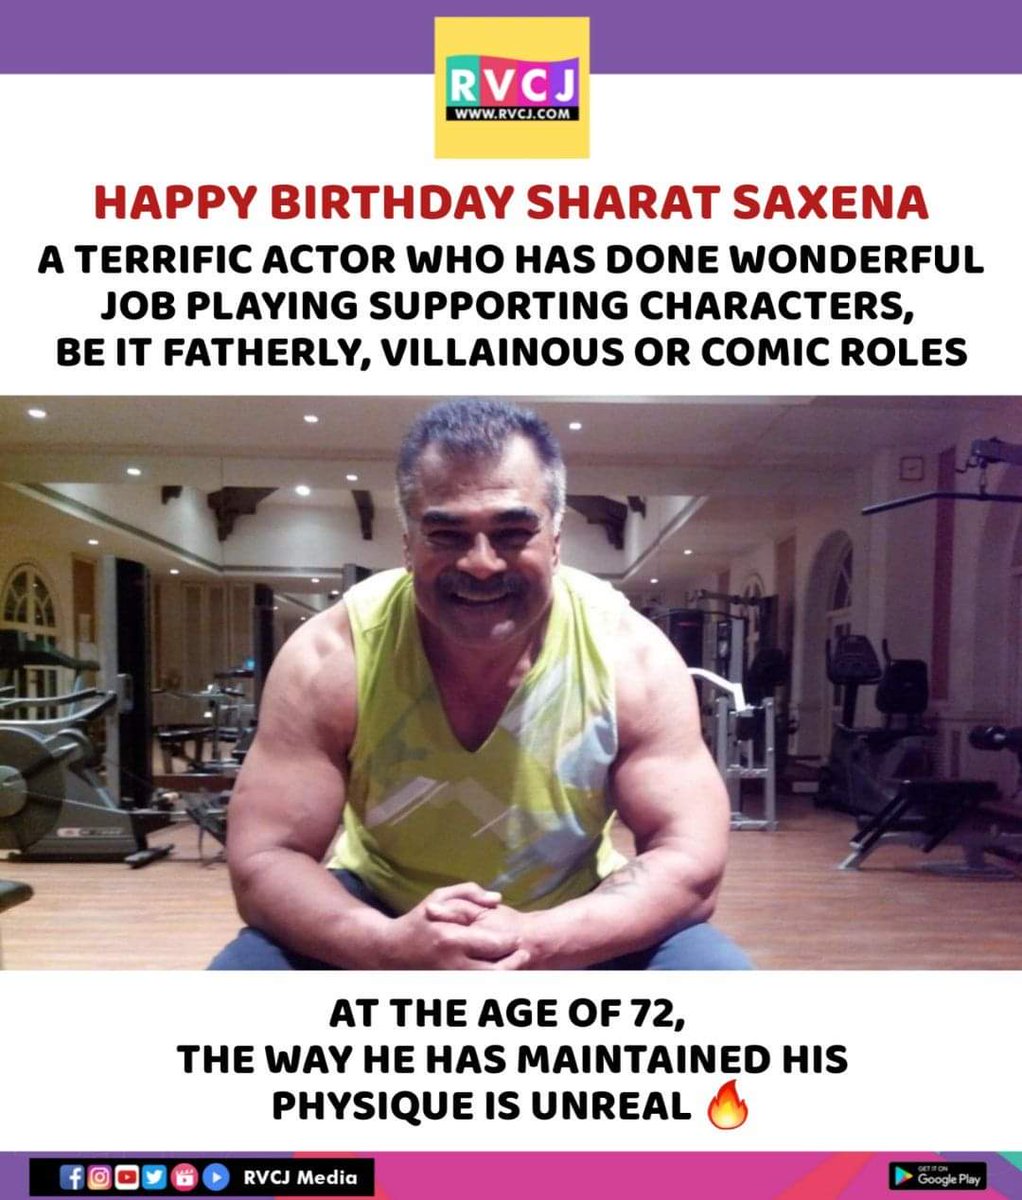 Happy Birthday Sharat Saxena!

#sharatsaxena #rvcjmovies #rvcjinsta